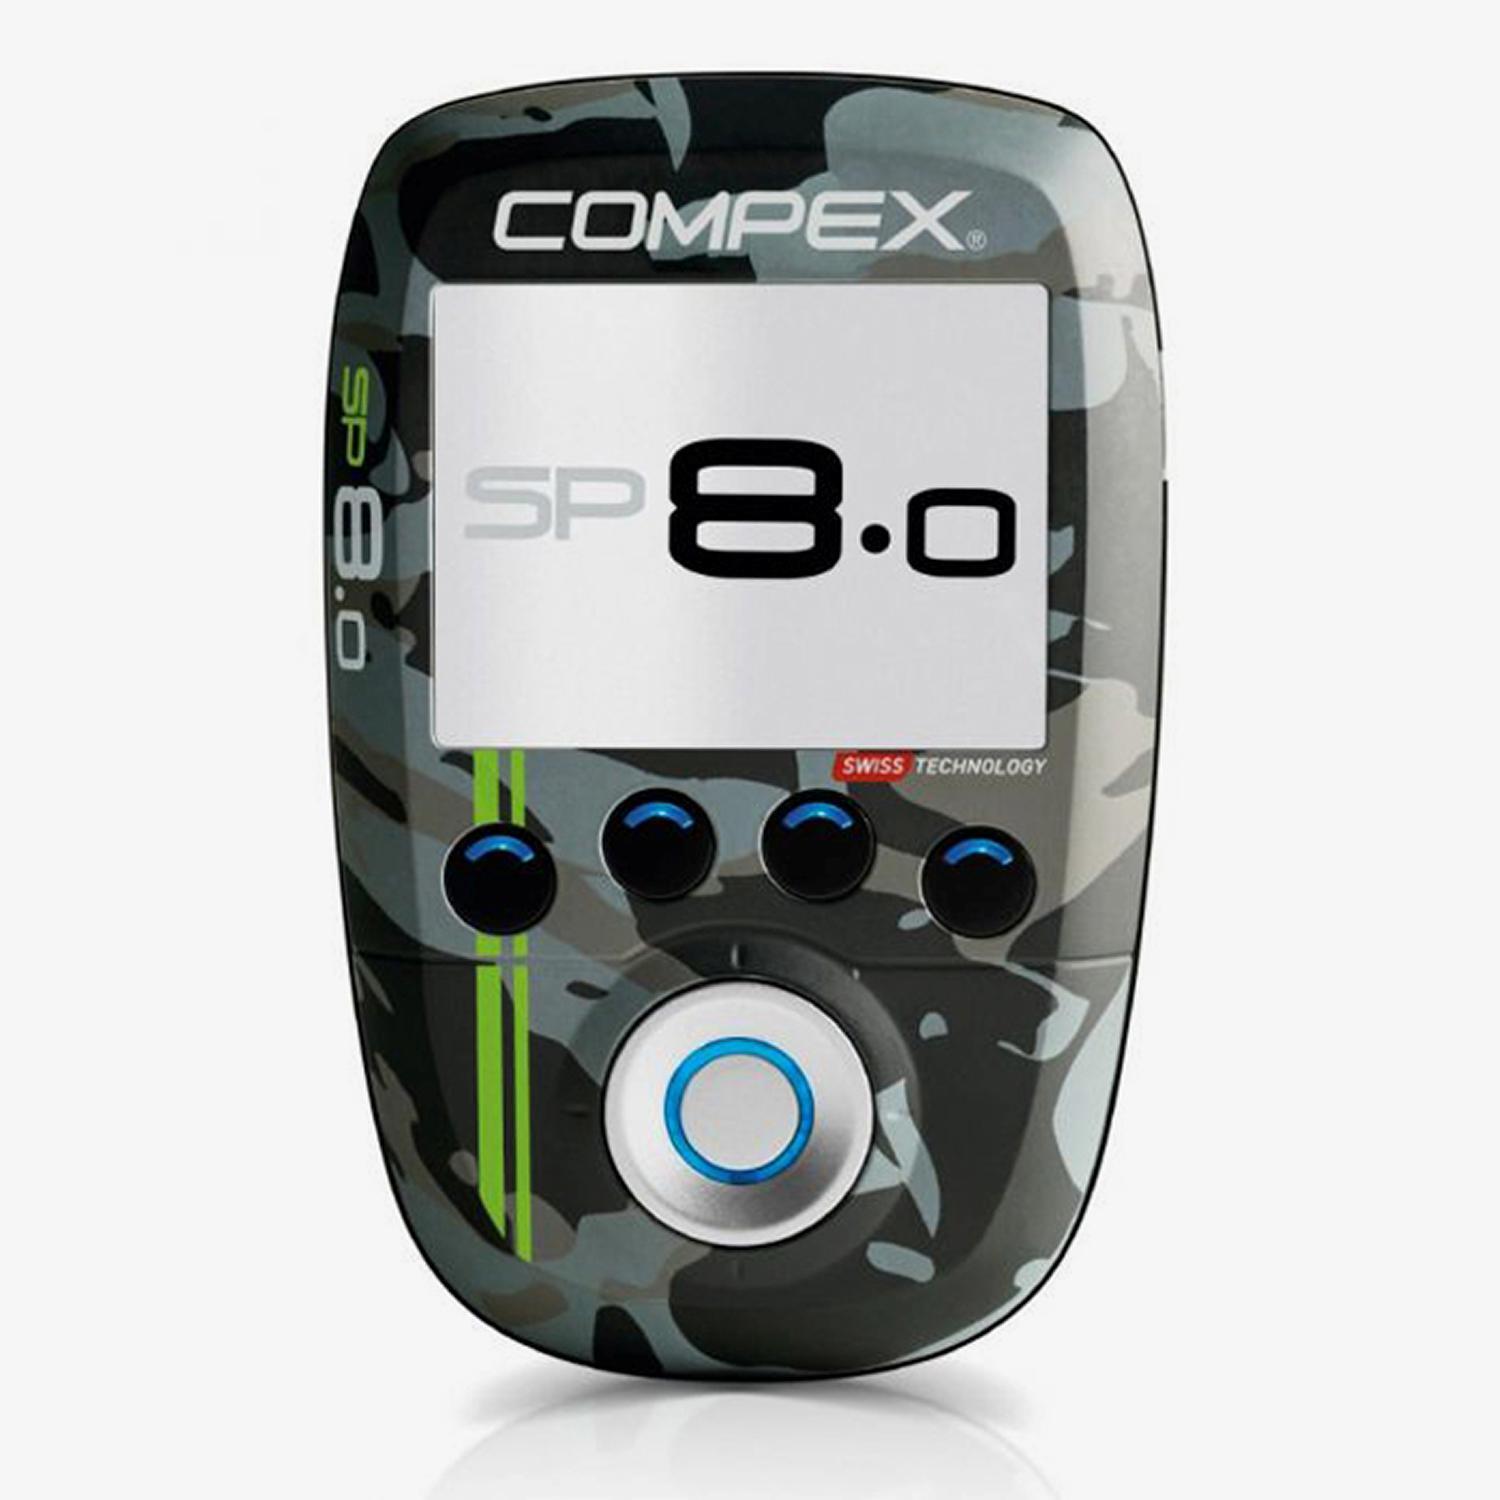 Compex Sp 8.0 - Noir - stimulateur musculaire sports taille UNICA